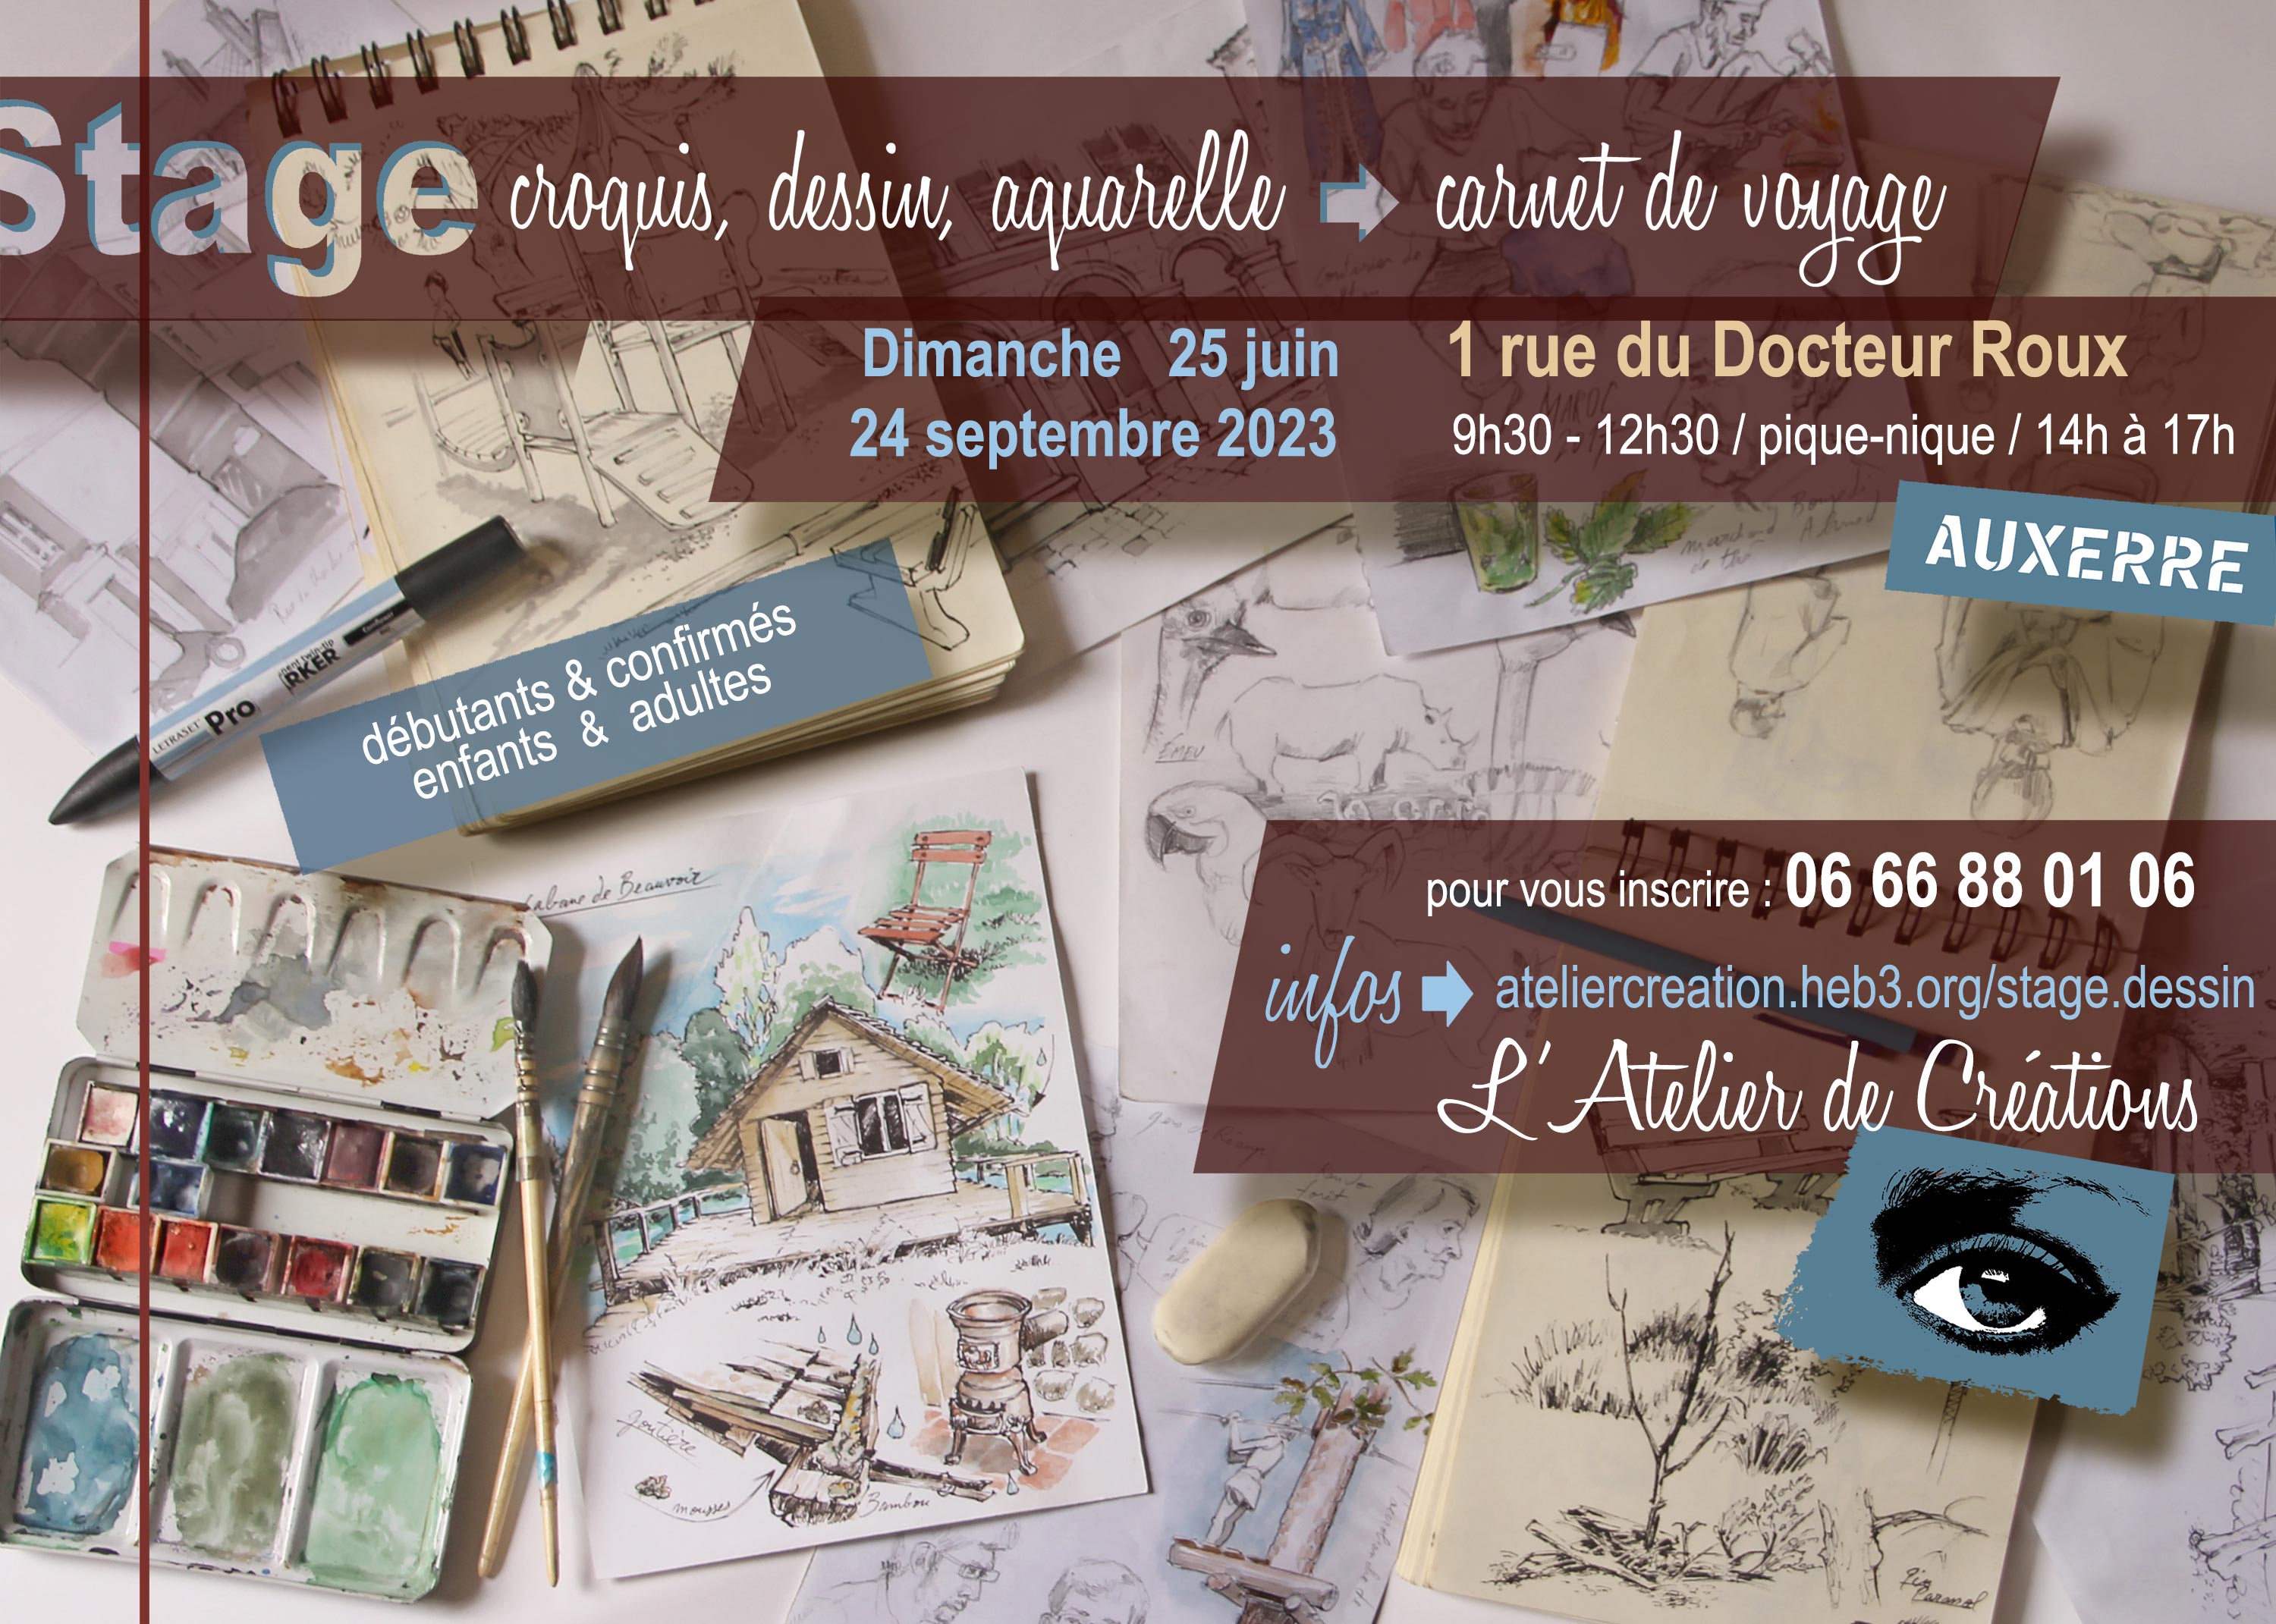 stage de dessin → aquarelle→ carnet de voyage - Auxerre - (89000) - dim. 24  sept. 23 - Spectable